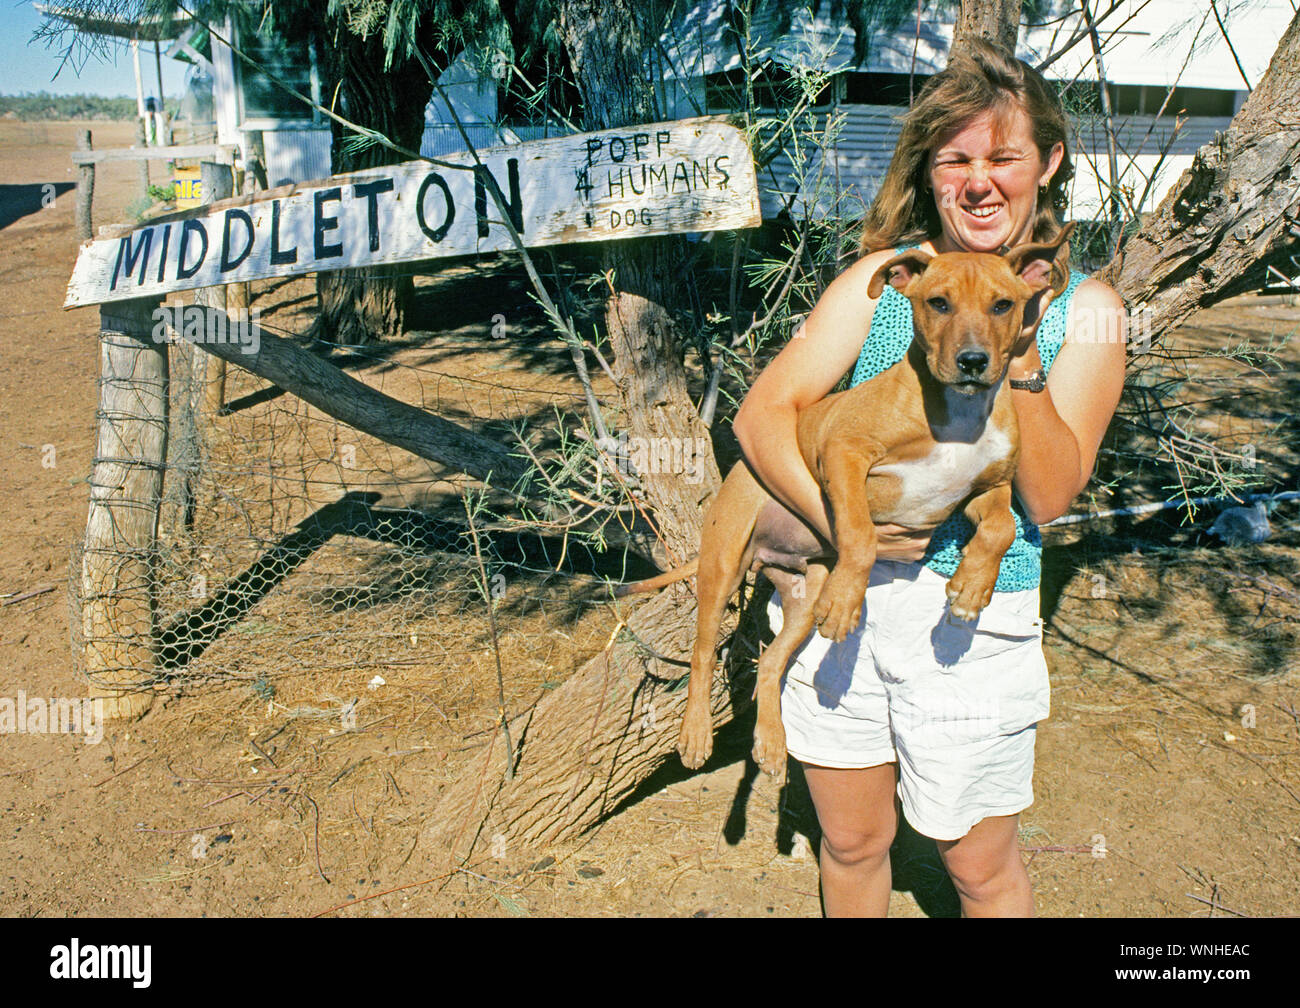 Un ranch femme et son chien à l'avant de leur petite maison dans la petite communauté de l'outback, l'Australie, Middleton au Queensland Banque D'Images